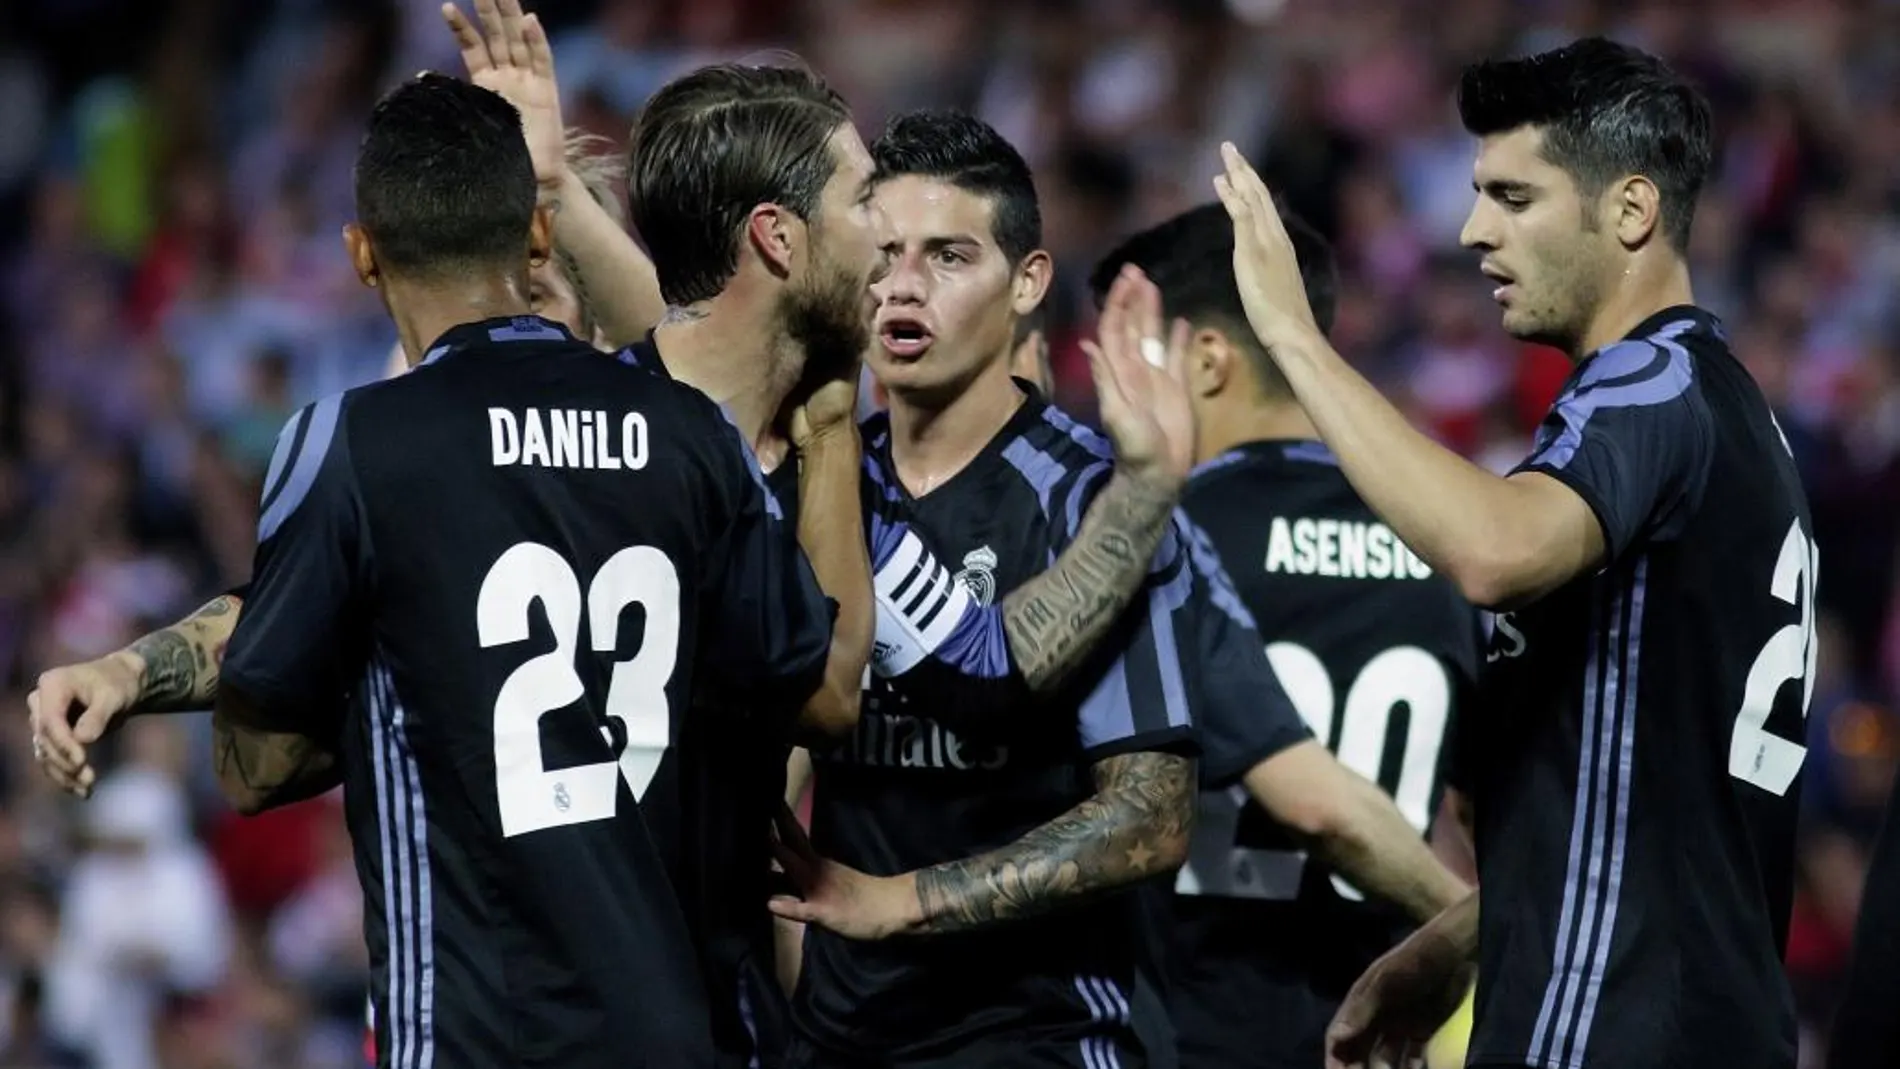 El delantero del Real Madrid Morata es felicitado por sus compañeros tras marcar ante el Granada, durante el partido de Liga en Primera División disputado esta noche en el estadio Los Cármenes